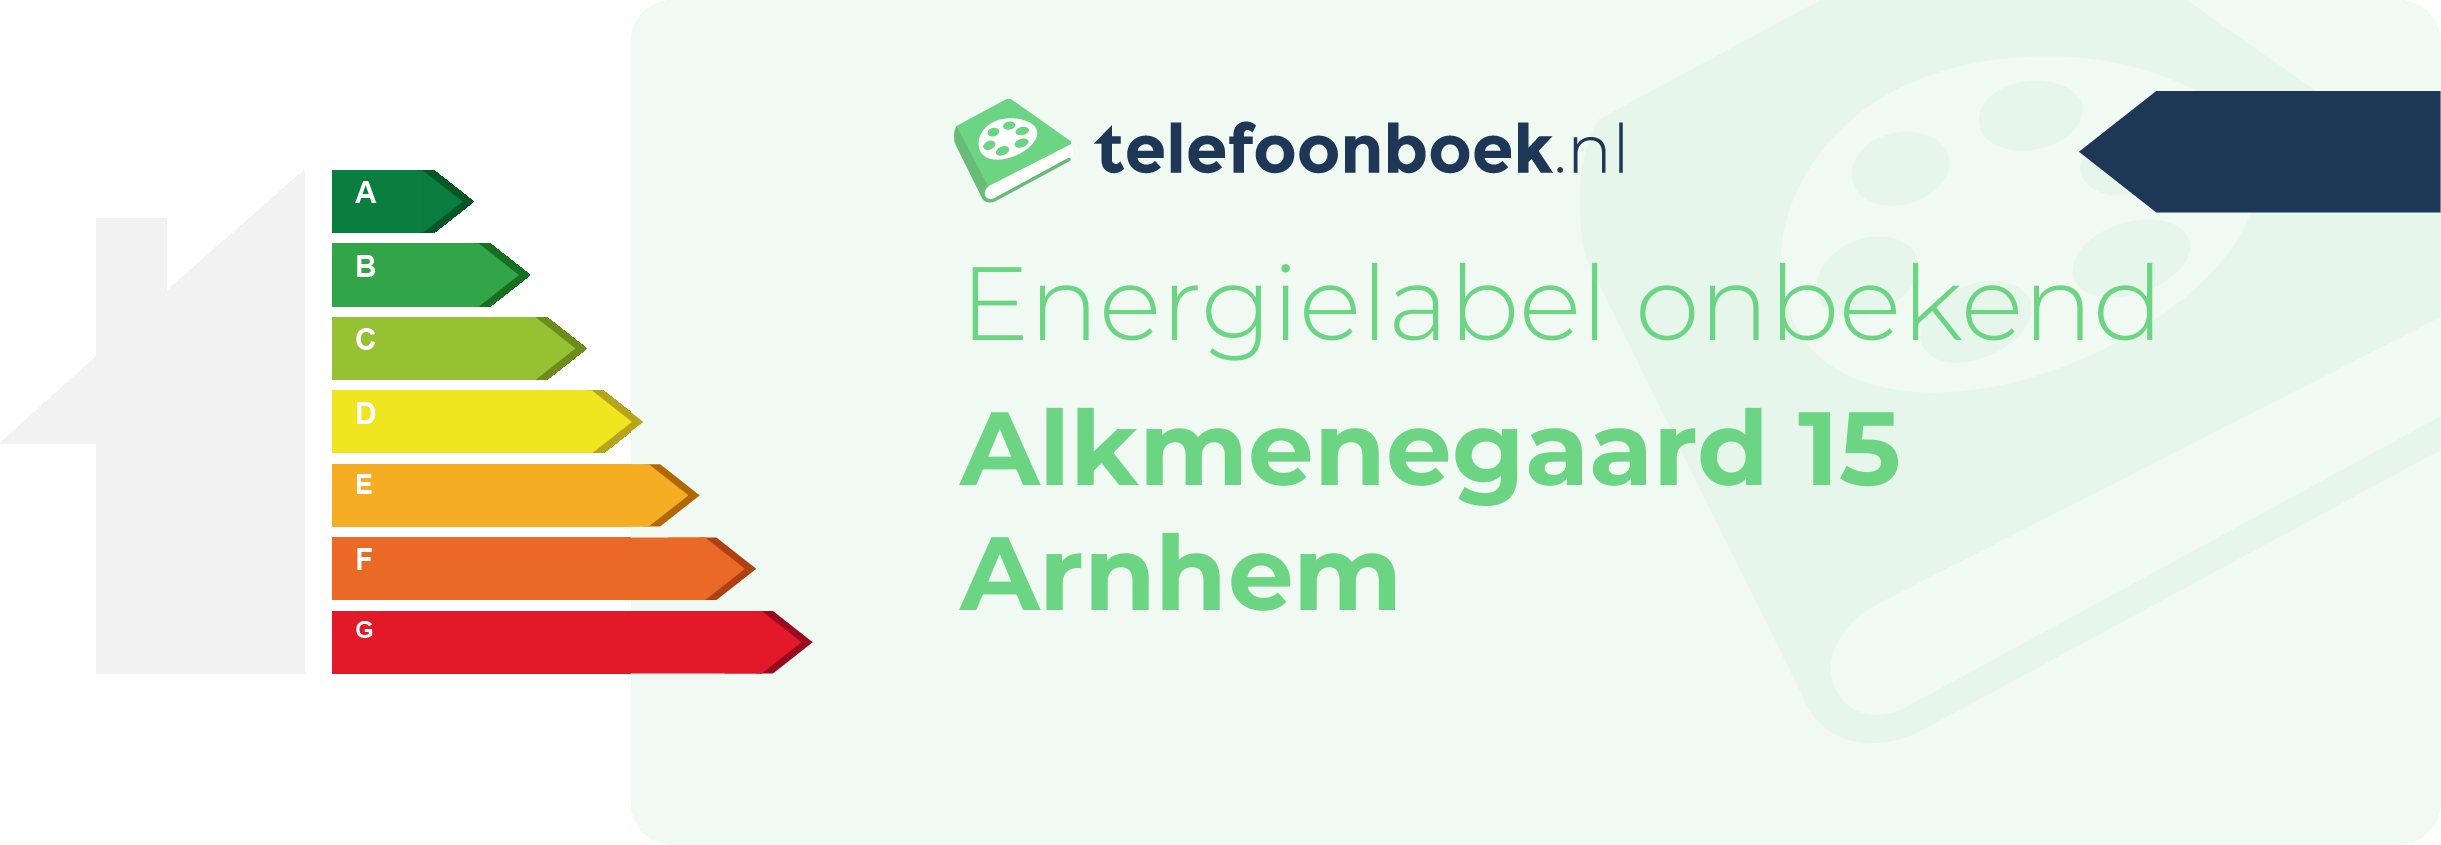 Energielabel Alkmenegaard 15 Arnhem